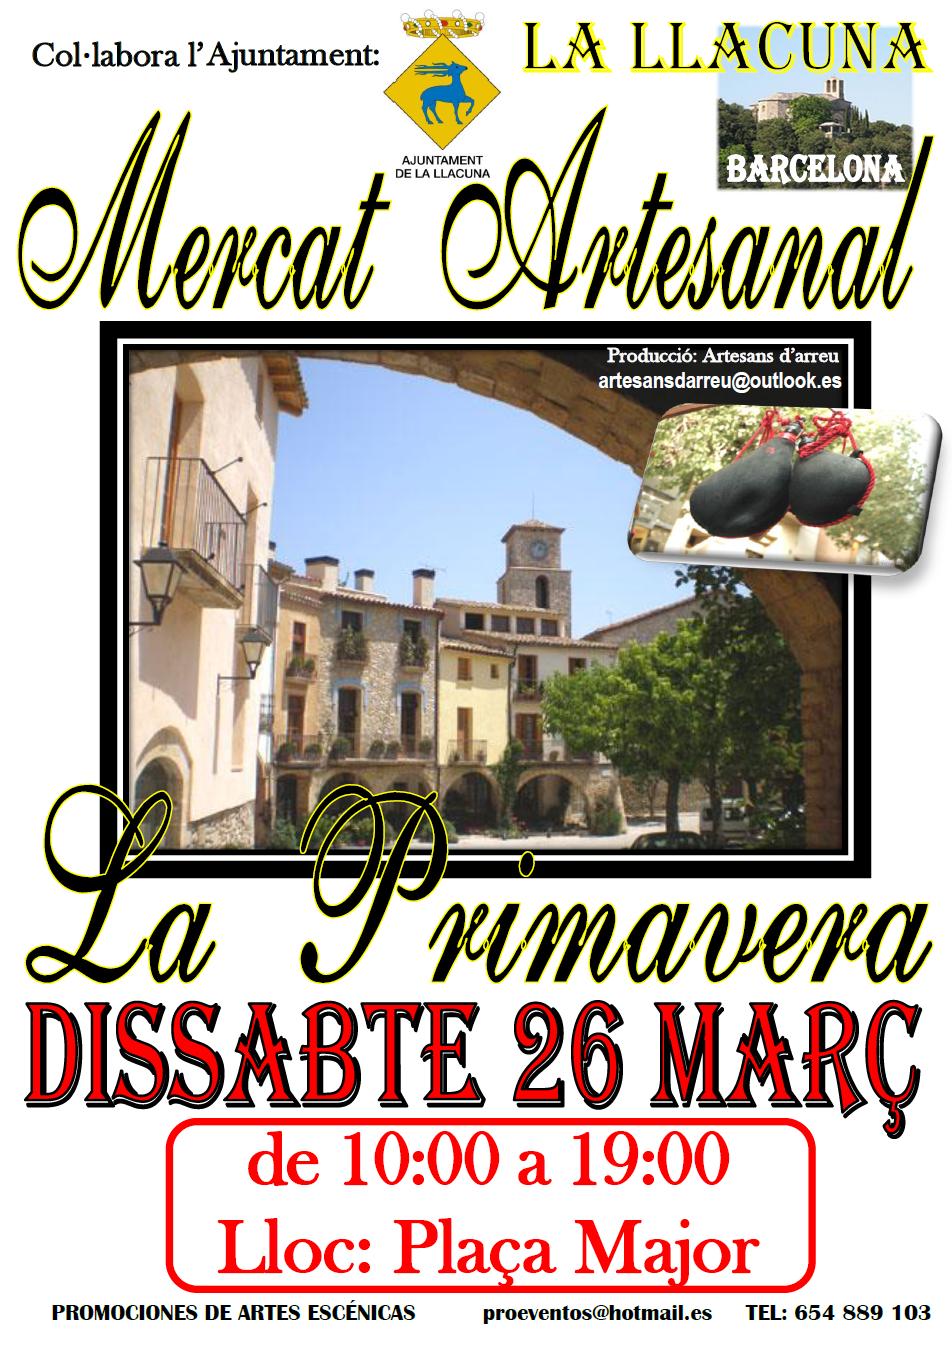 Mercado Artesanal del Pages en La Llacuna -Barcelona- 26 de Marzo 2016 .